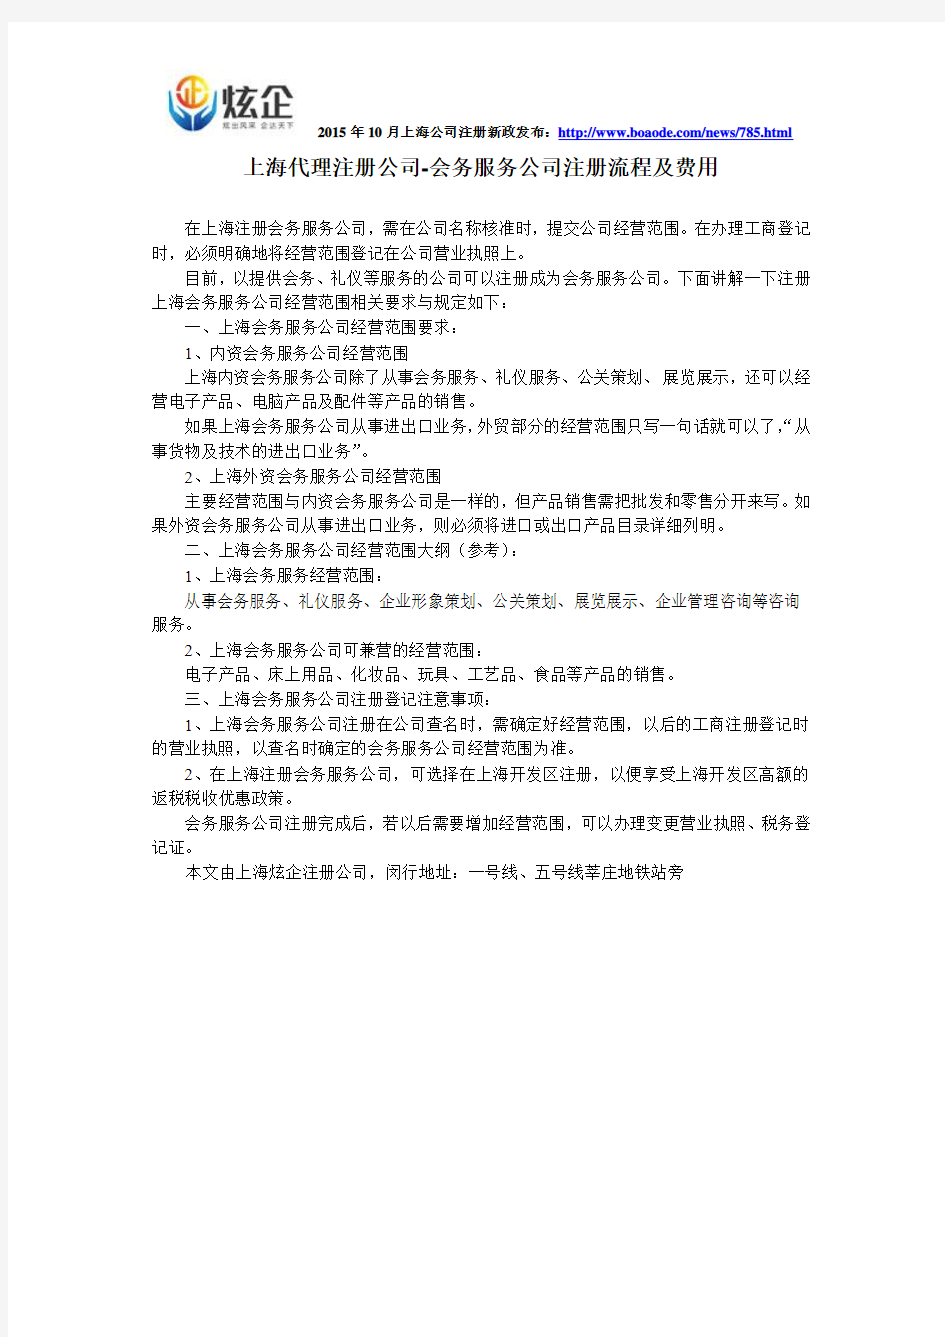 上海代理注册公司-会务服务公司注册流程及费用